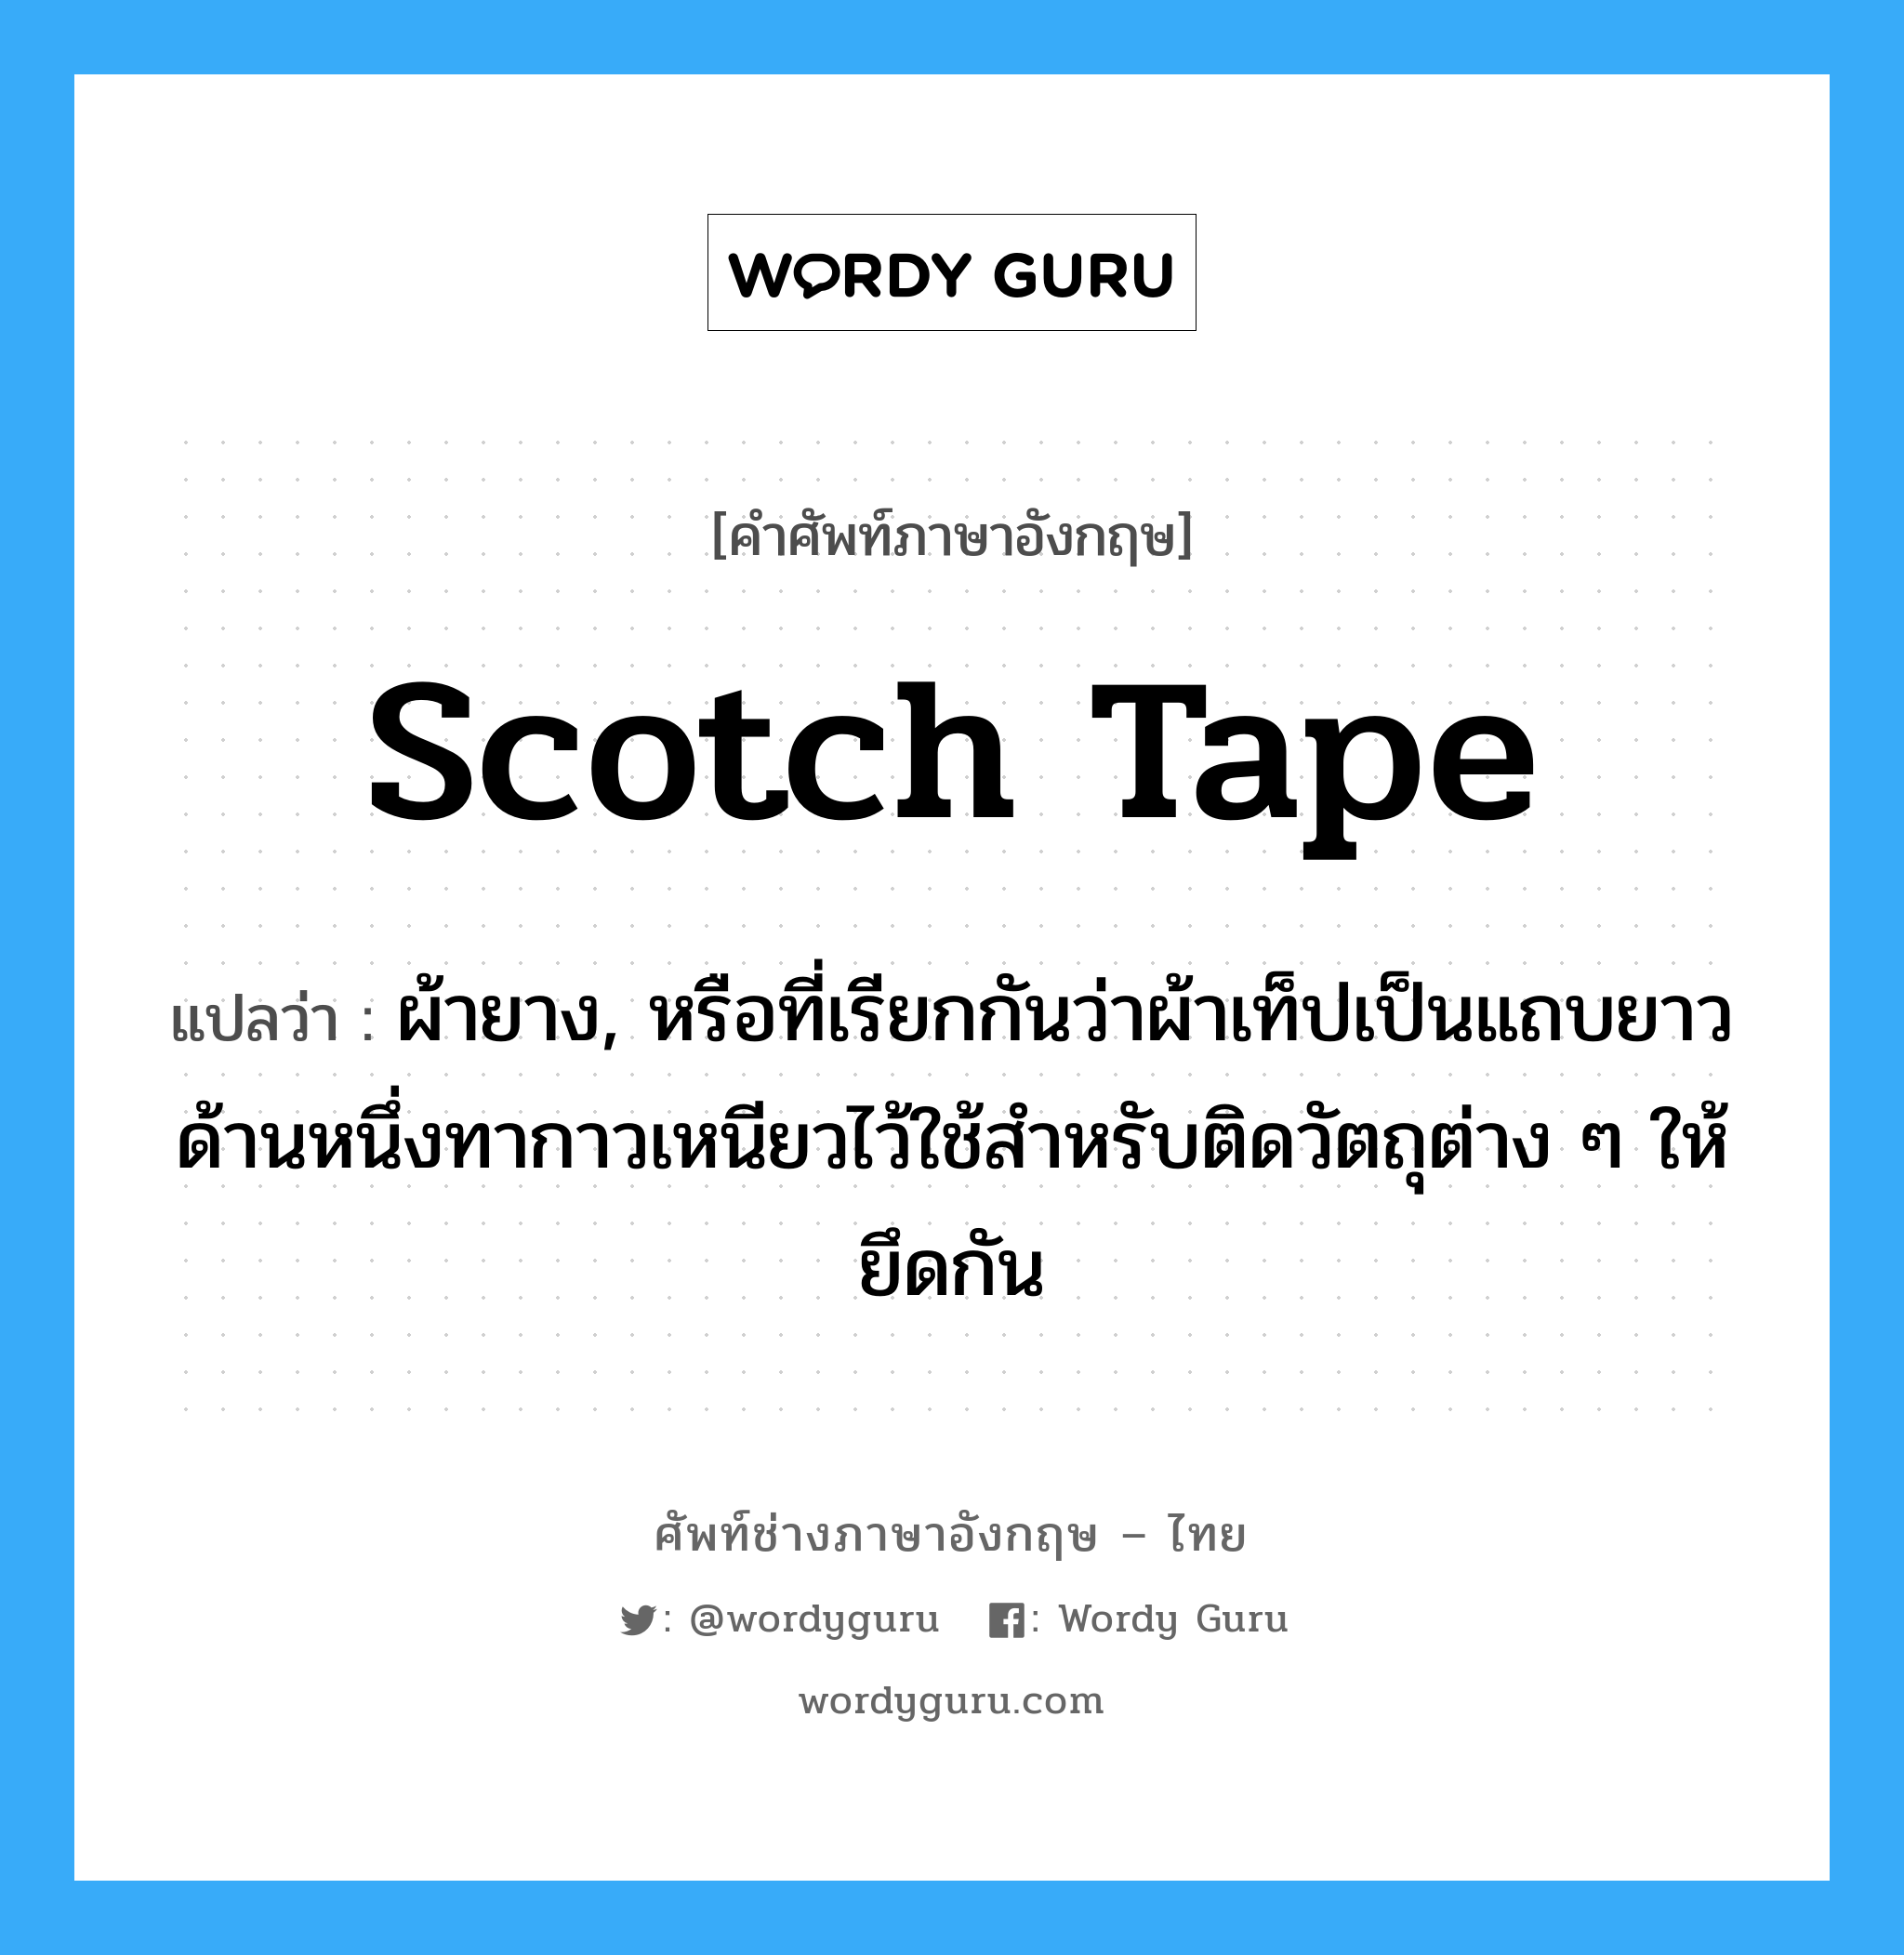 scotch tape แปลว่า?, คำศัพท์ช่างภาษาอังกฤษ - ไทย scotch tape คำศัพท์ภาษาอังกฤษ scotch tape แปลว่า ผ้ายาง, หรือที่เรียกกันว่าผ้าเท็ปเป็นแถบยาว ด้านหนึ่งทากาวเหนียวไว้ใช้สำหรับติดวัตถุต่าง ๆ ให้ยึดกัน